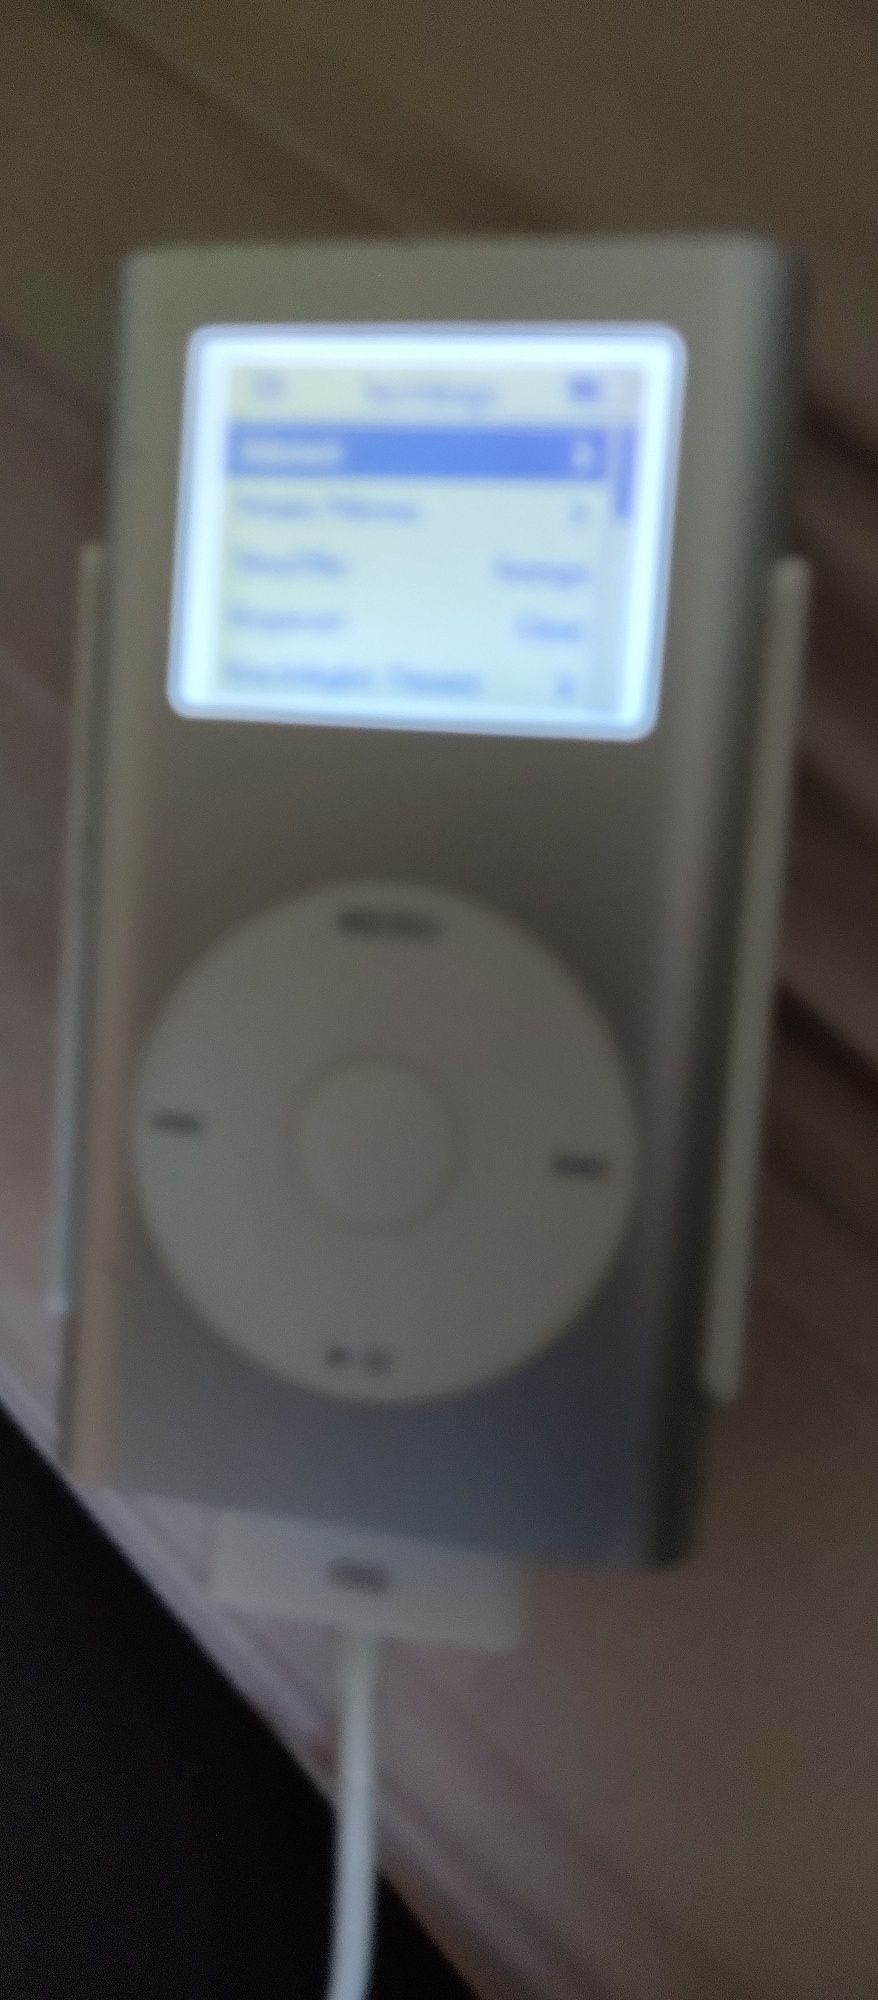 iPod mini 4gb original